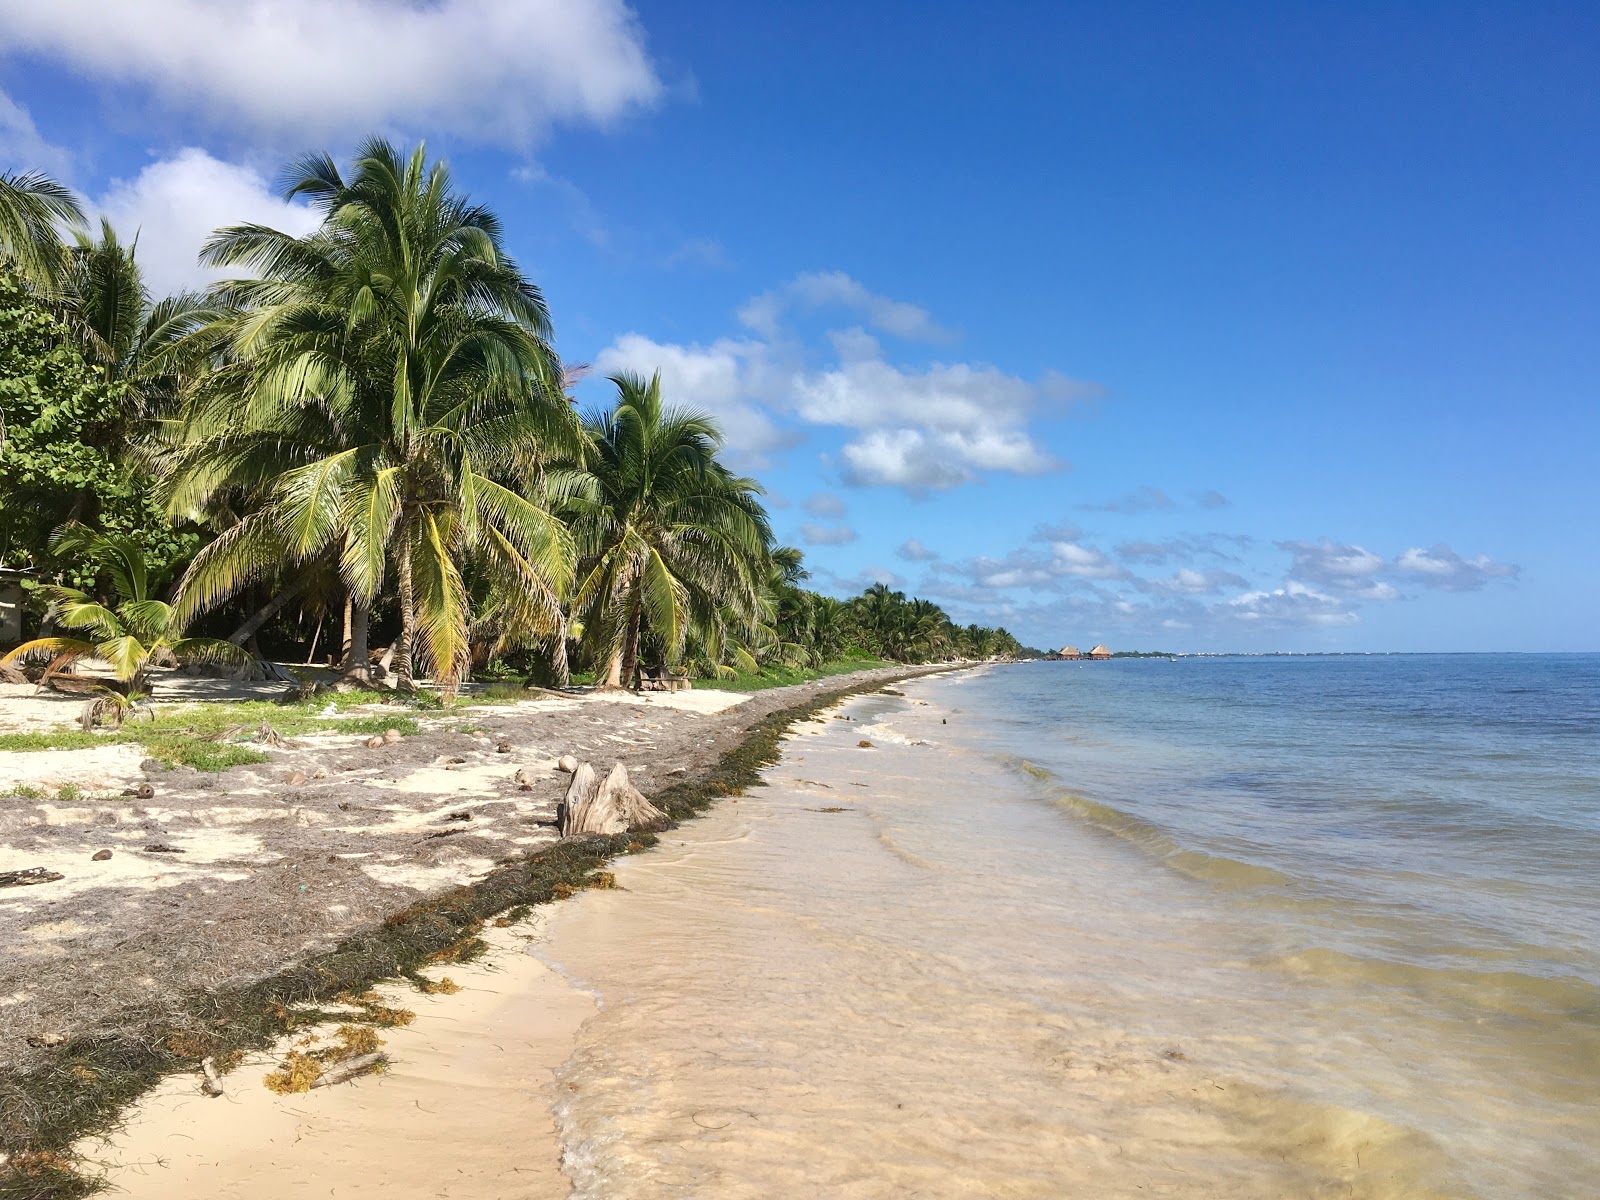 Maya Chan beach'in fotoğrafı parlak kum yüzey ile